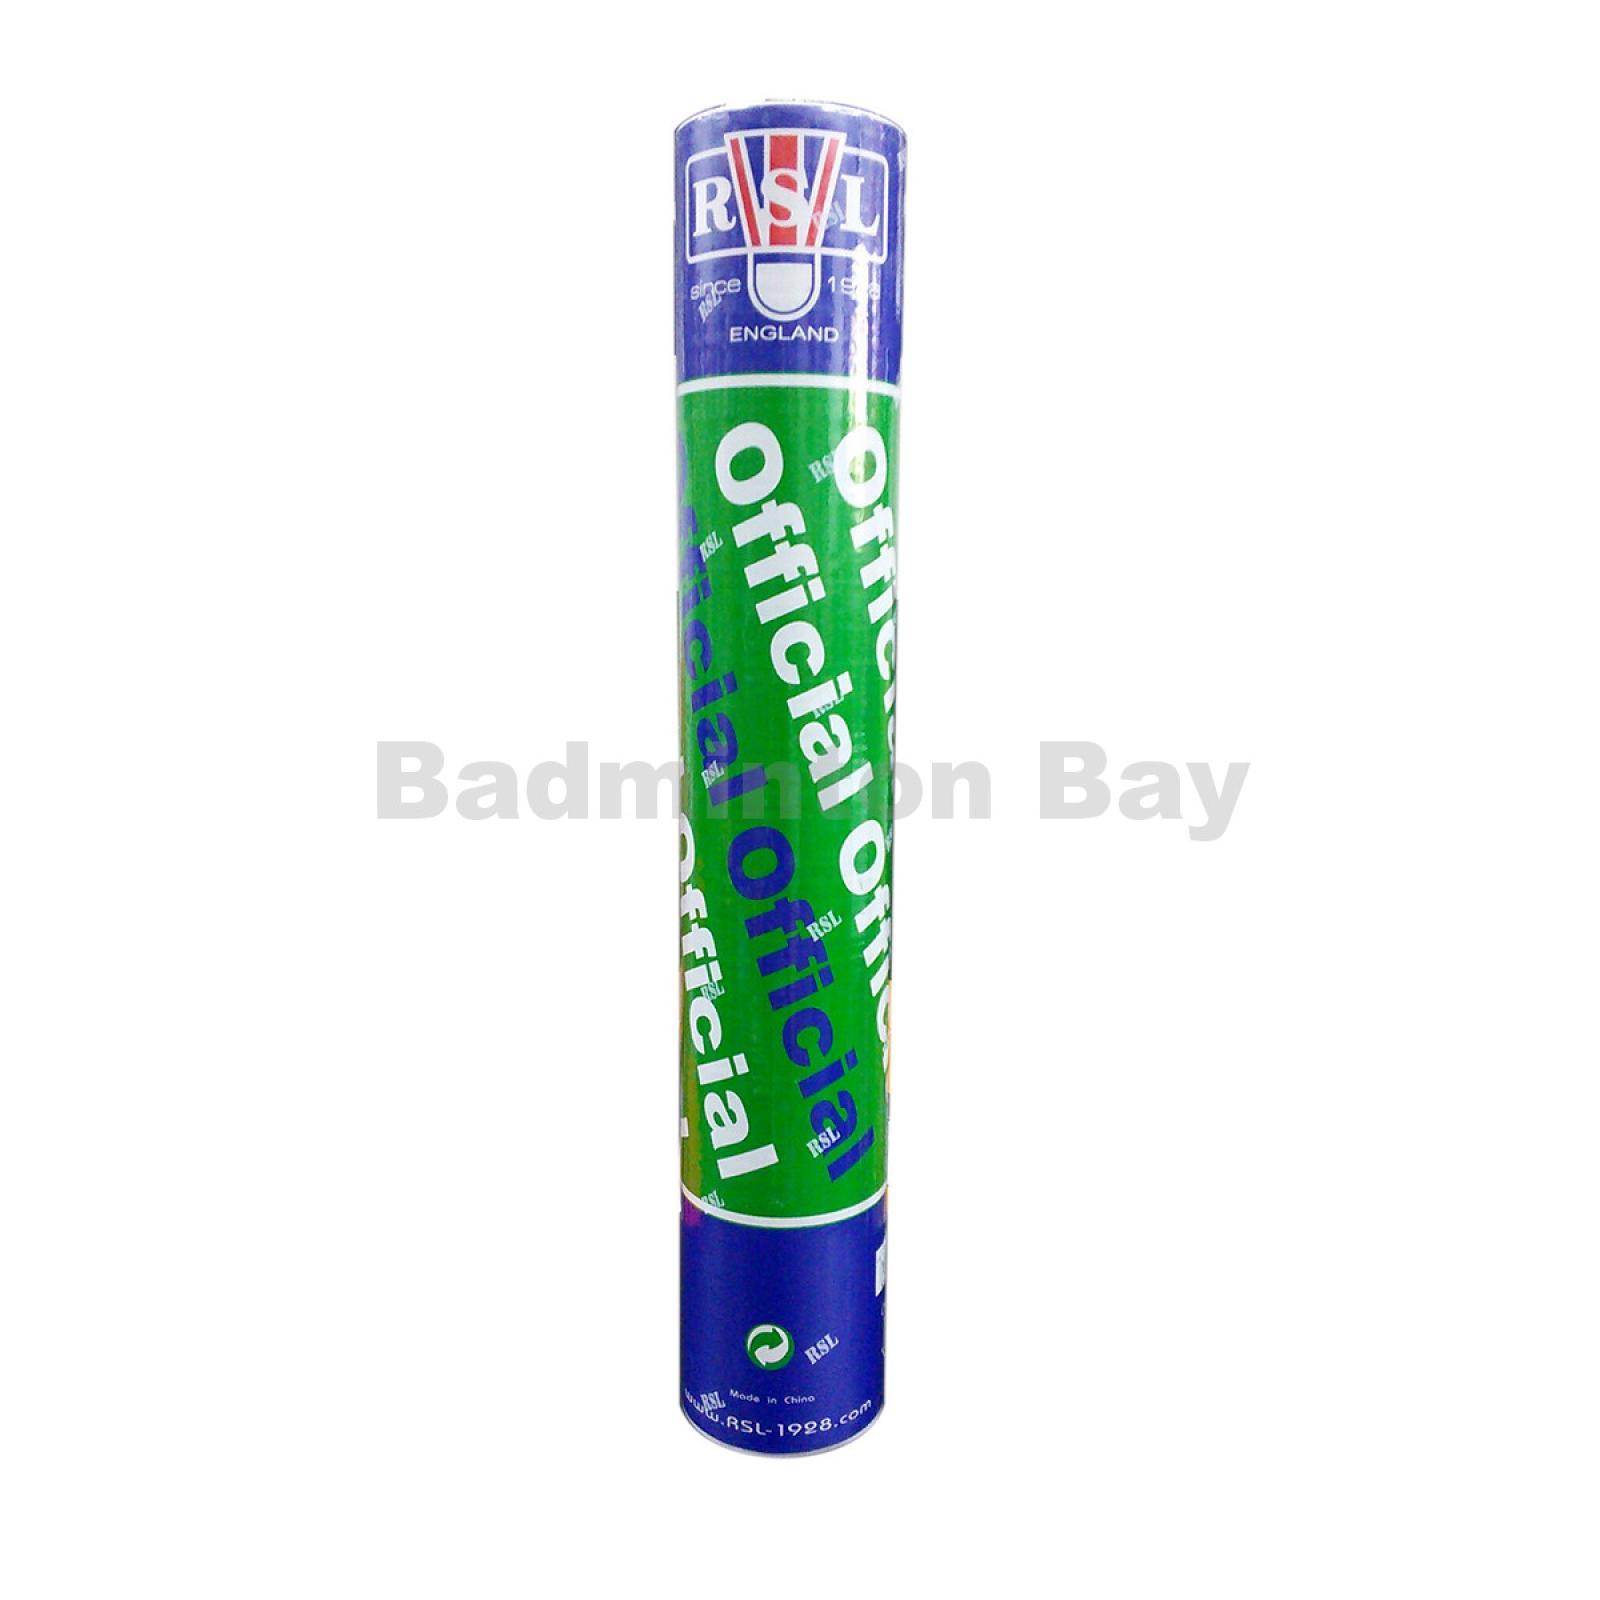 badminton shuttle brands